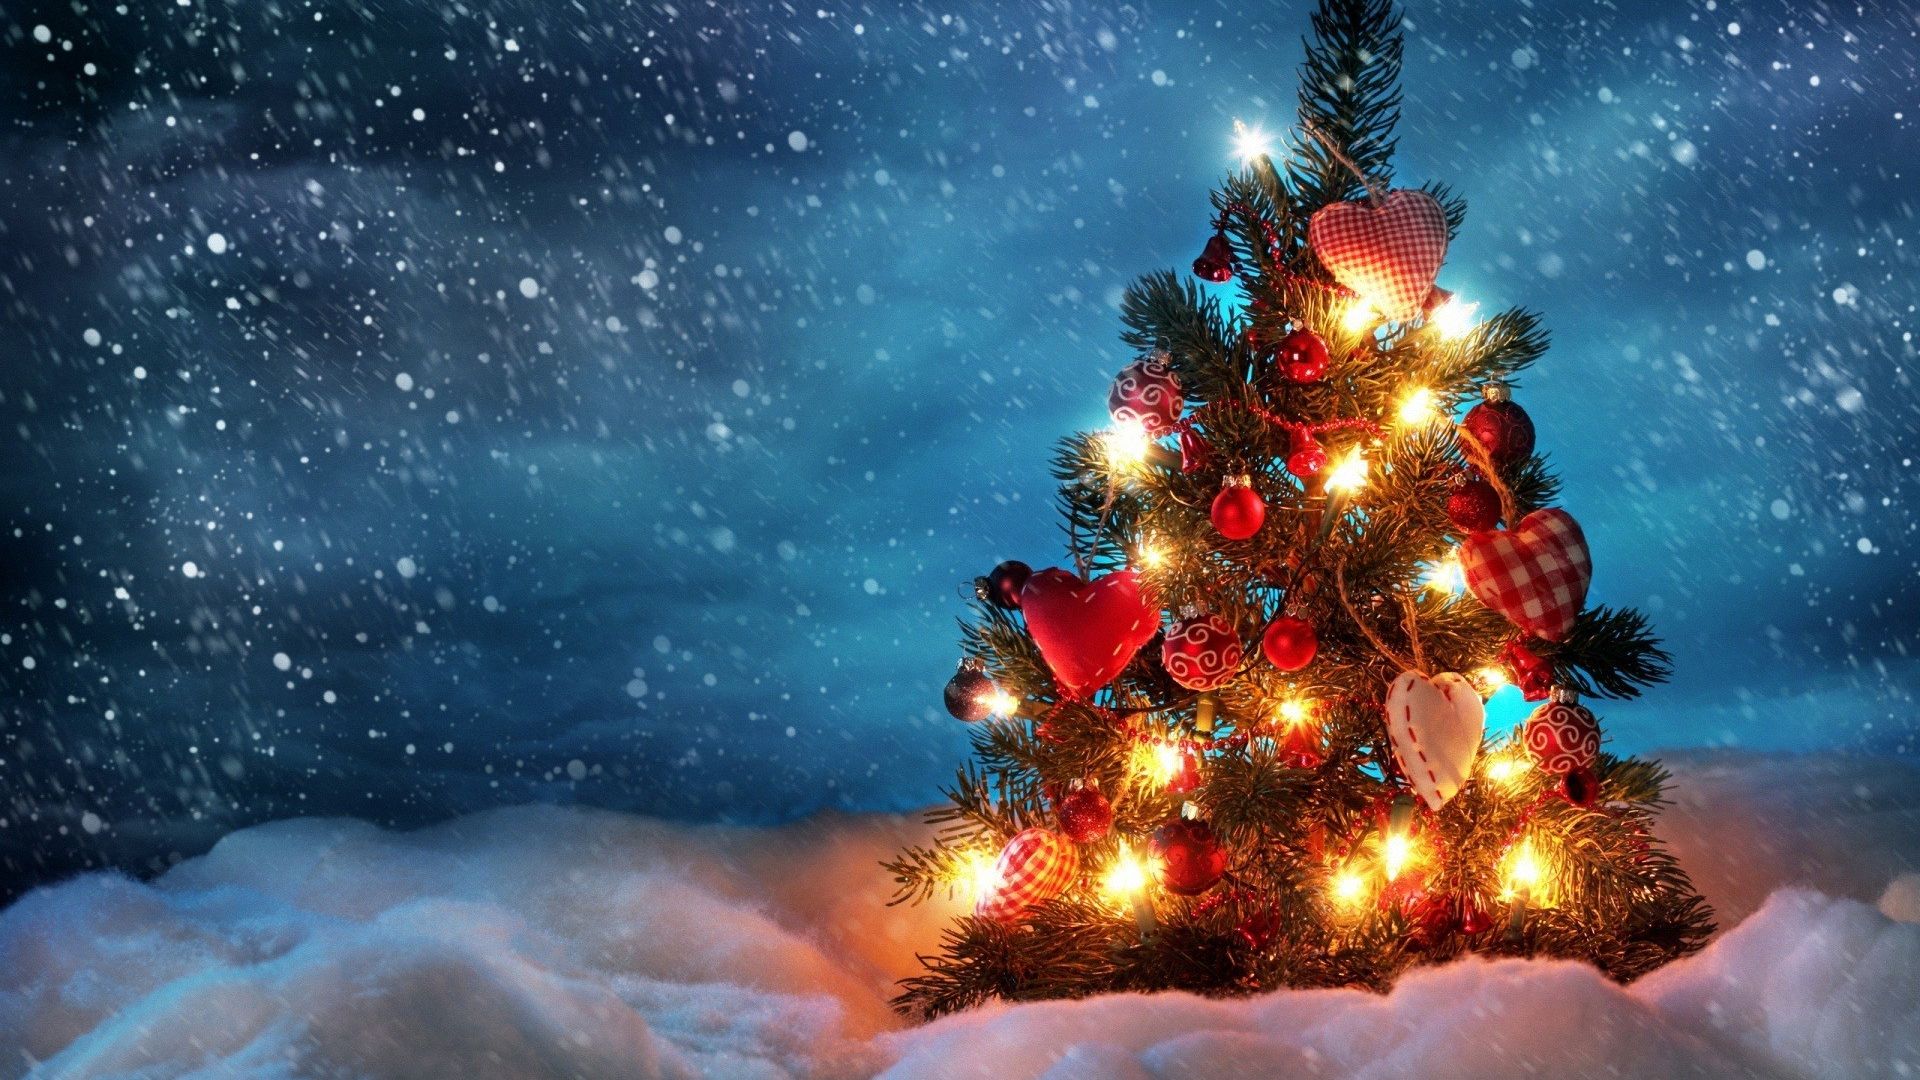 Wallpaper Christmas tree and lights